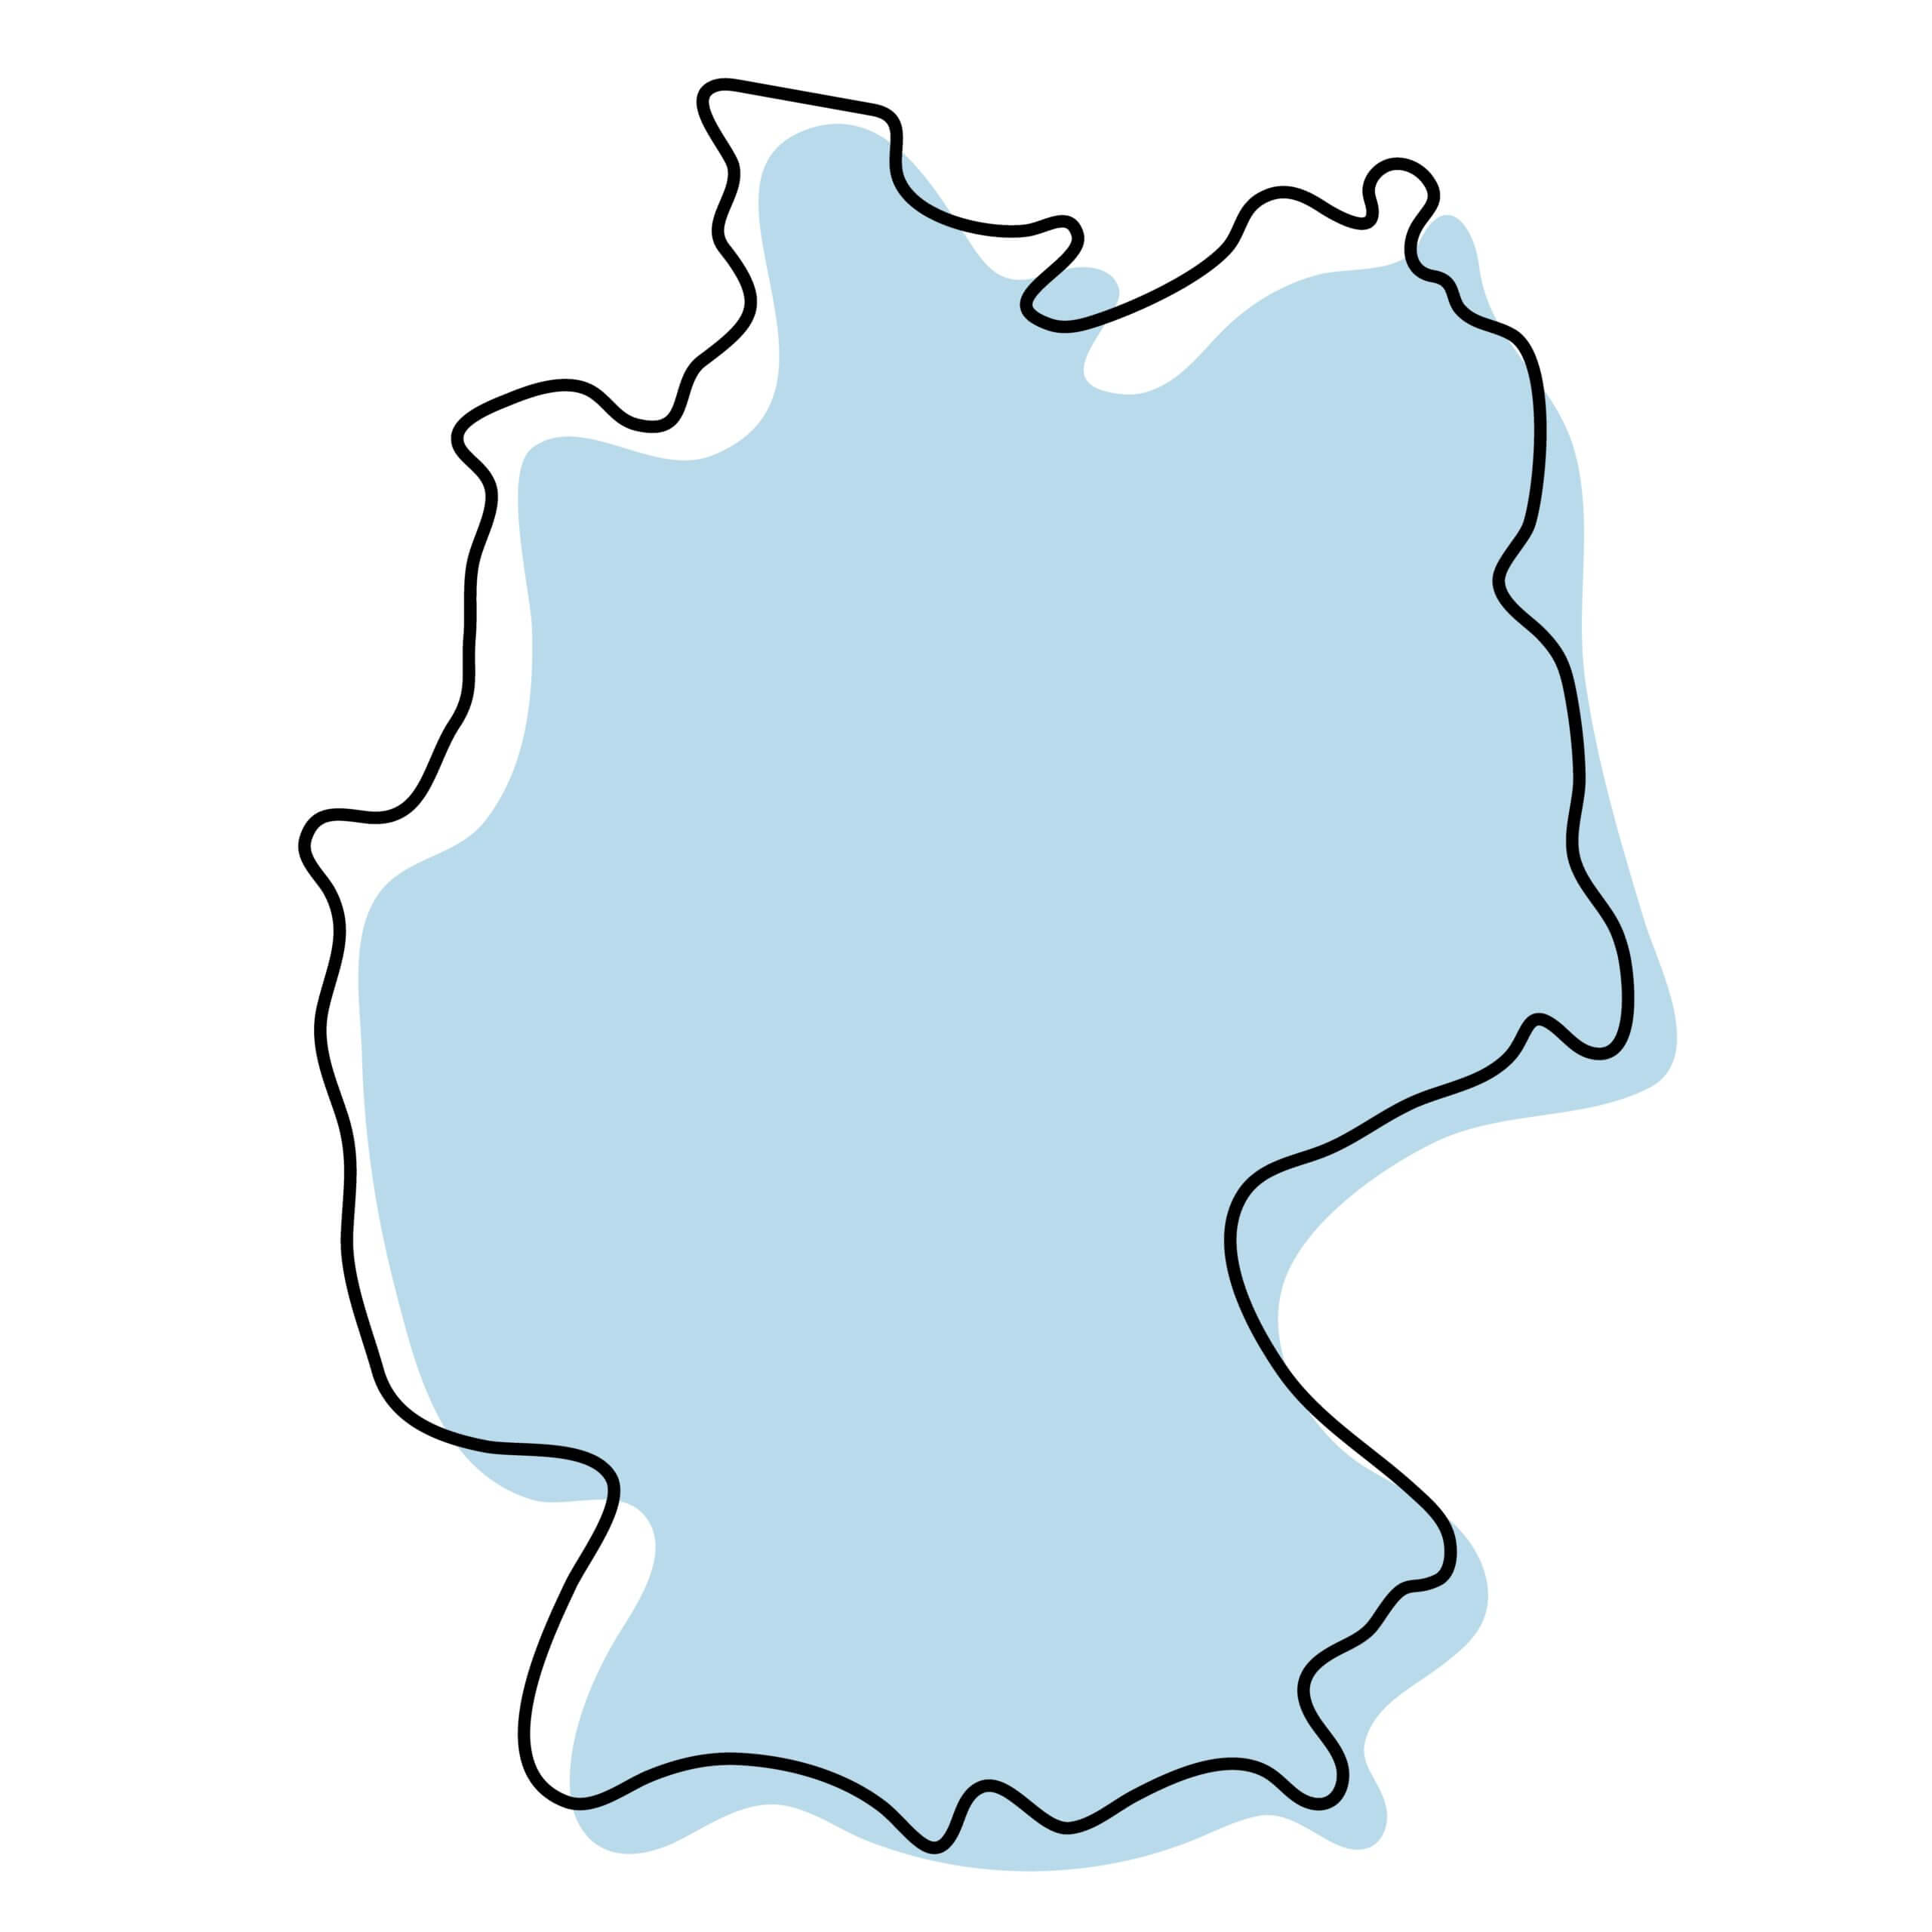 Eine Karte von Deutschland